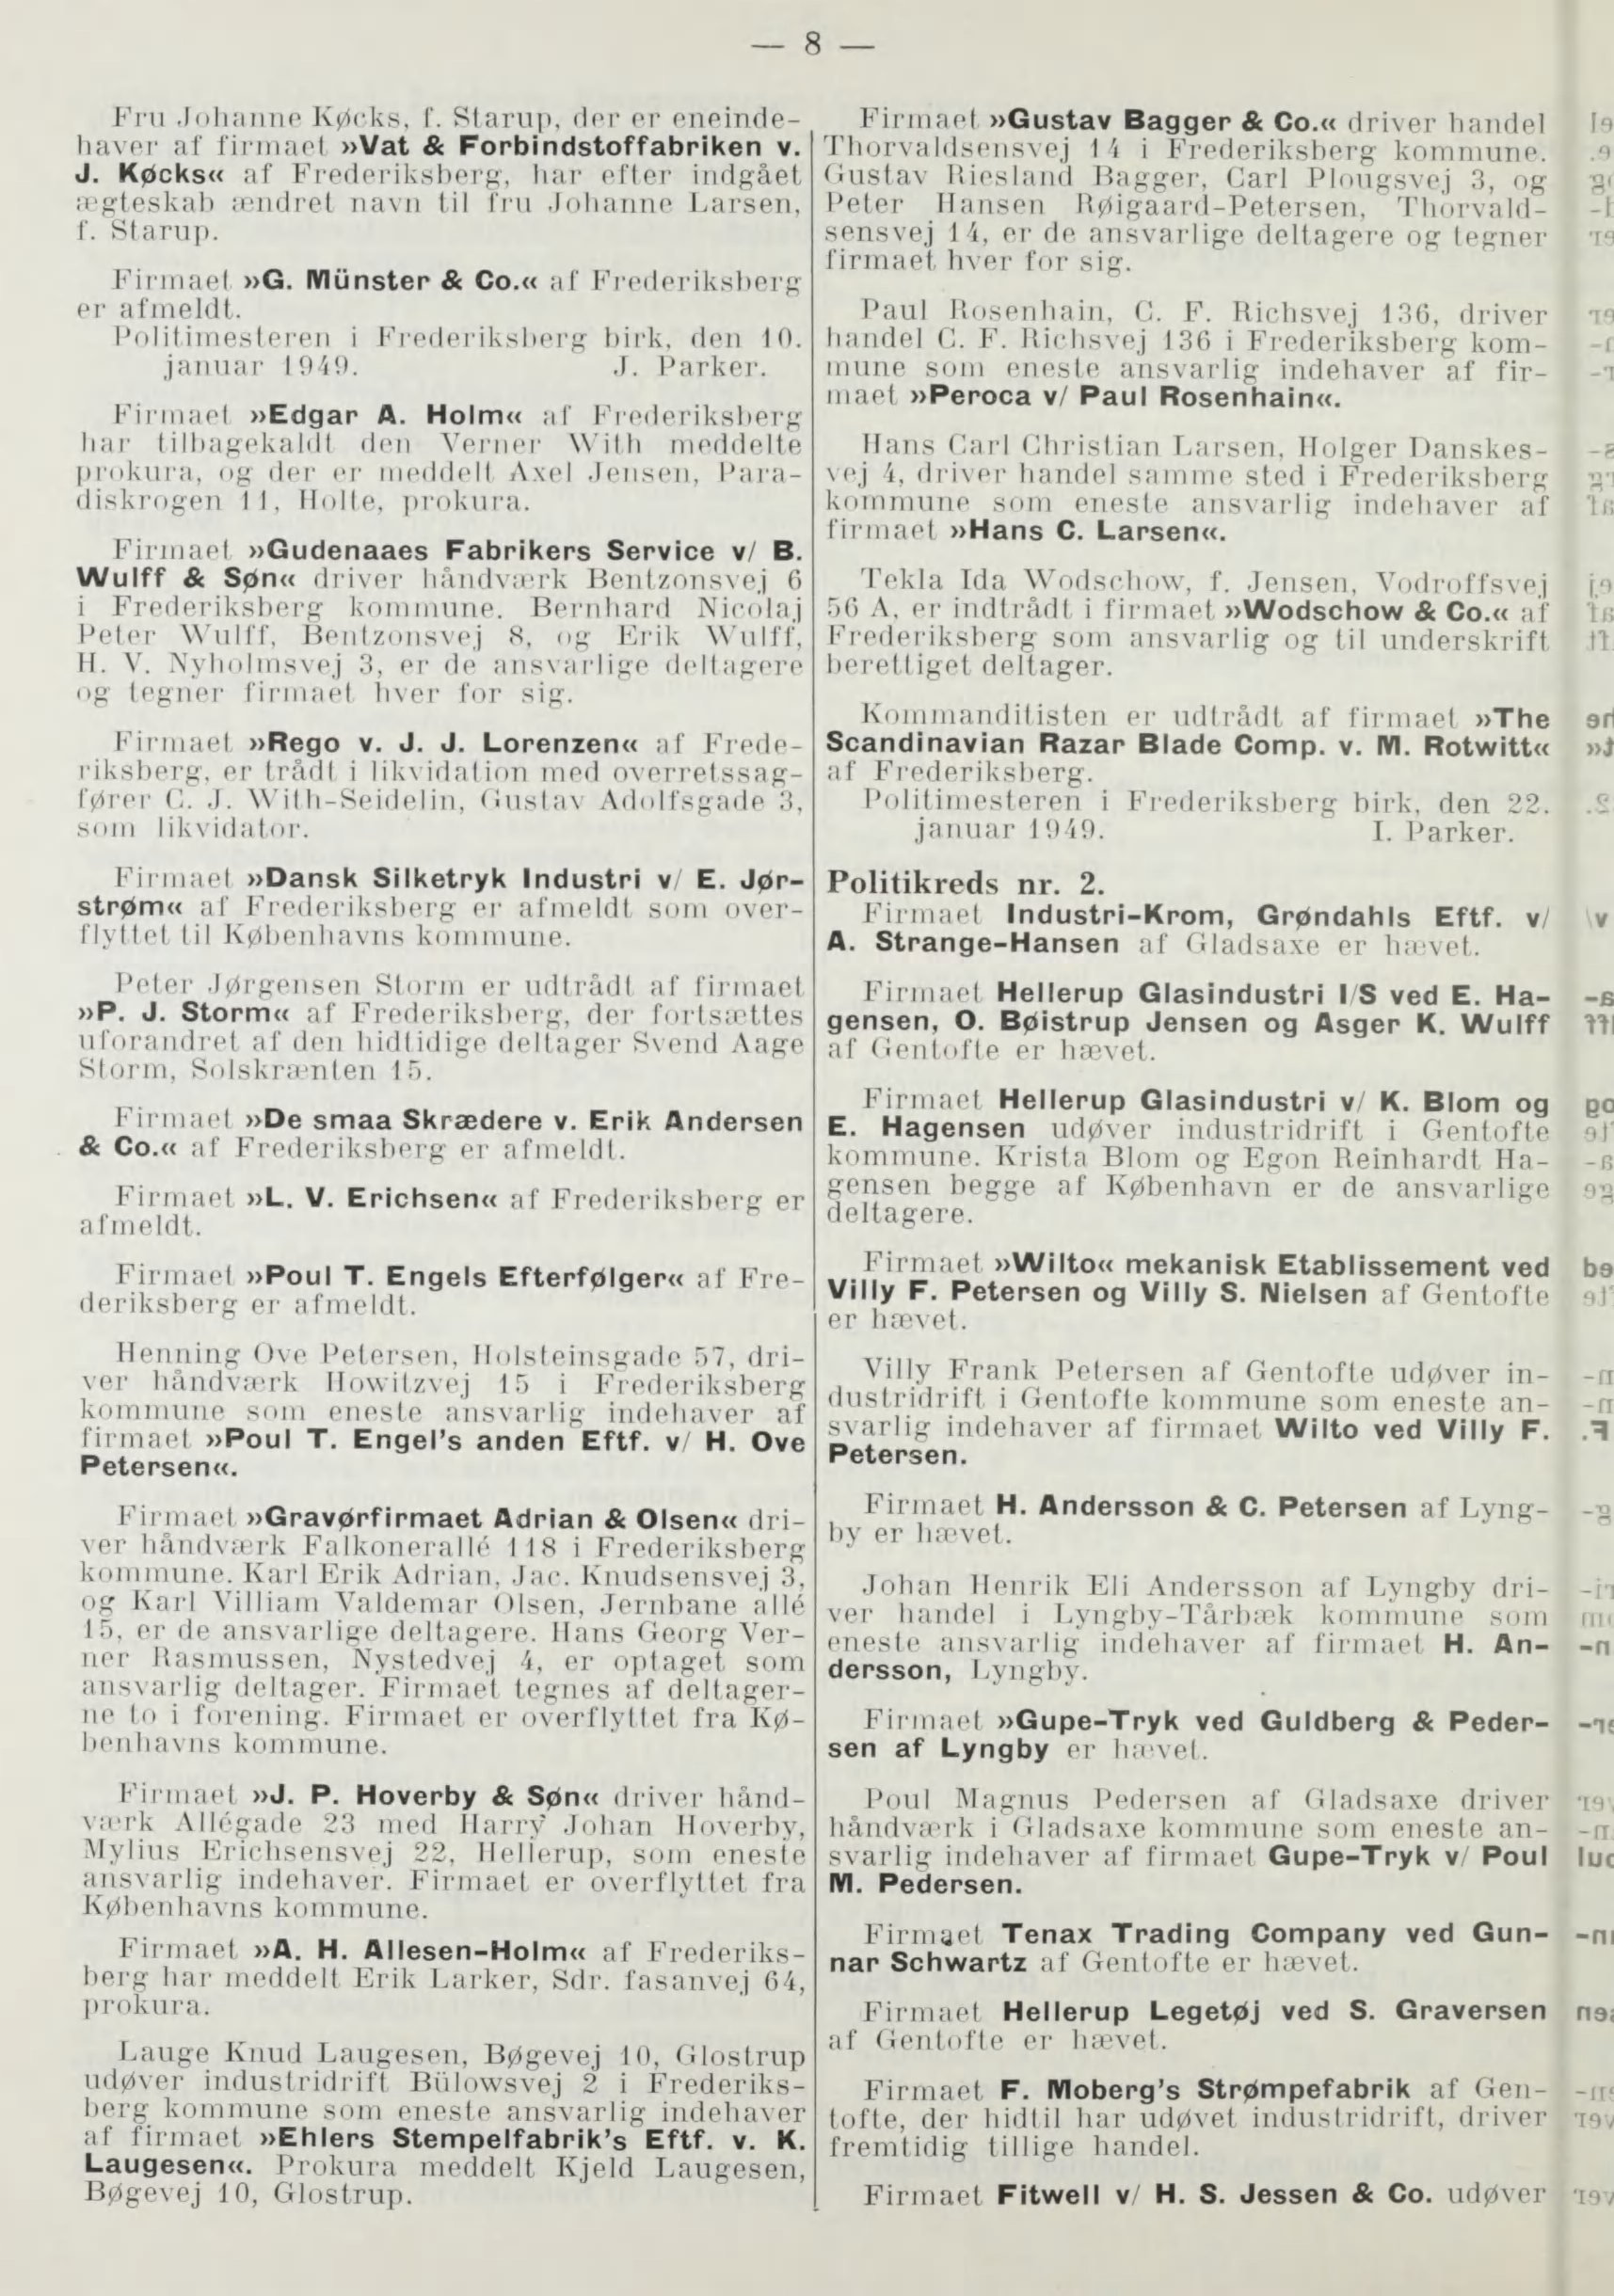 1949. Afinieldelsef, iefeendljjorle i Stalstidenije i Jaoyar llaaneil. N(».  I. - PDF Free Download